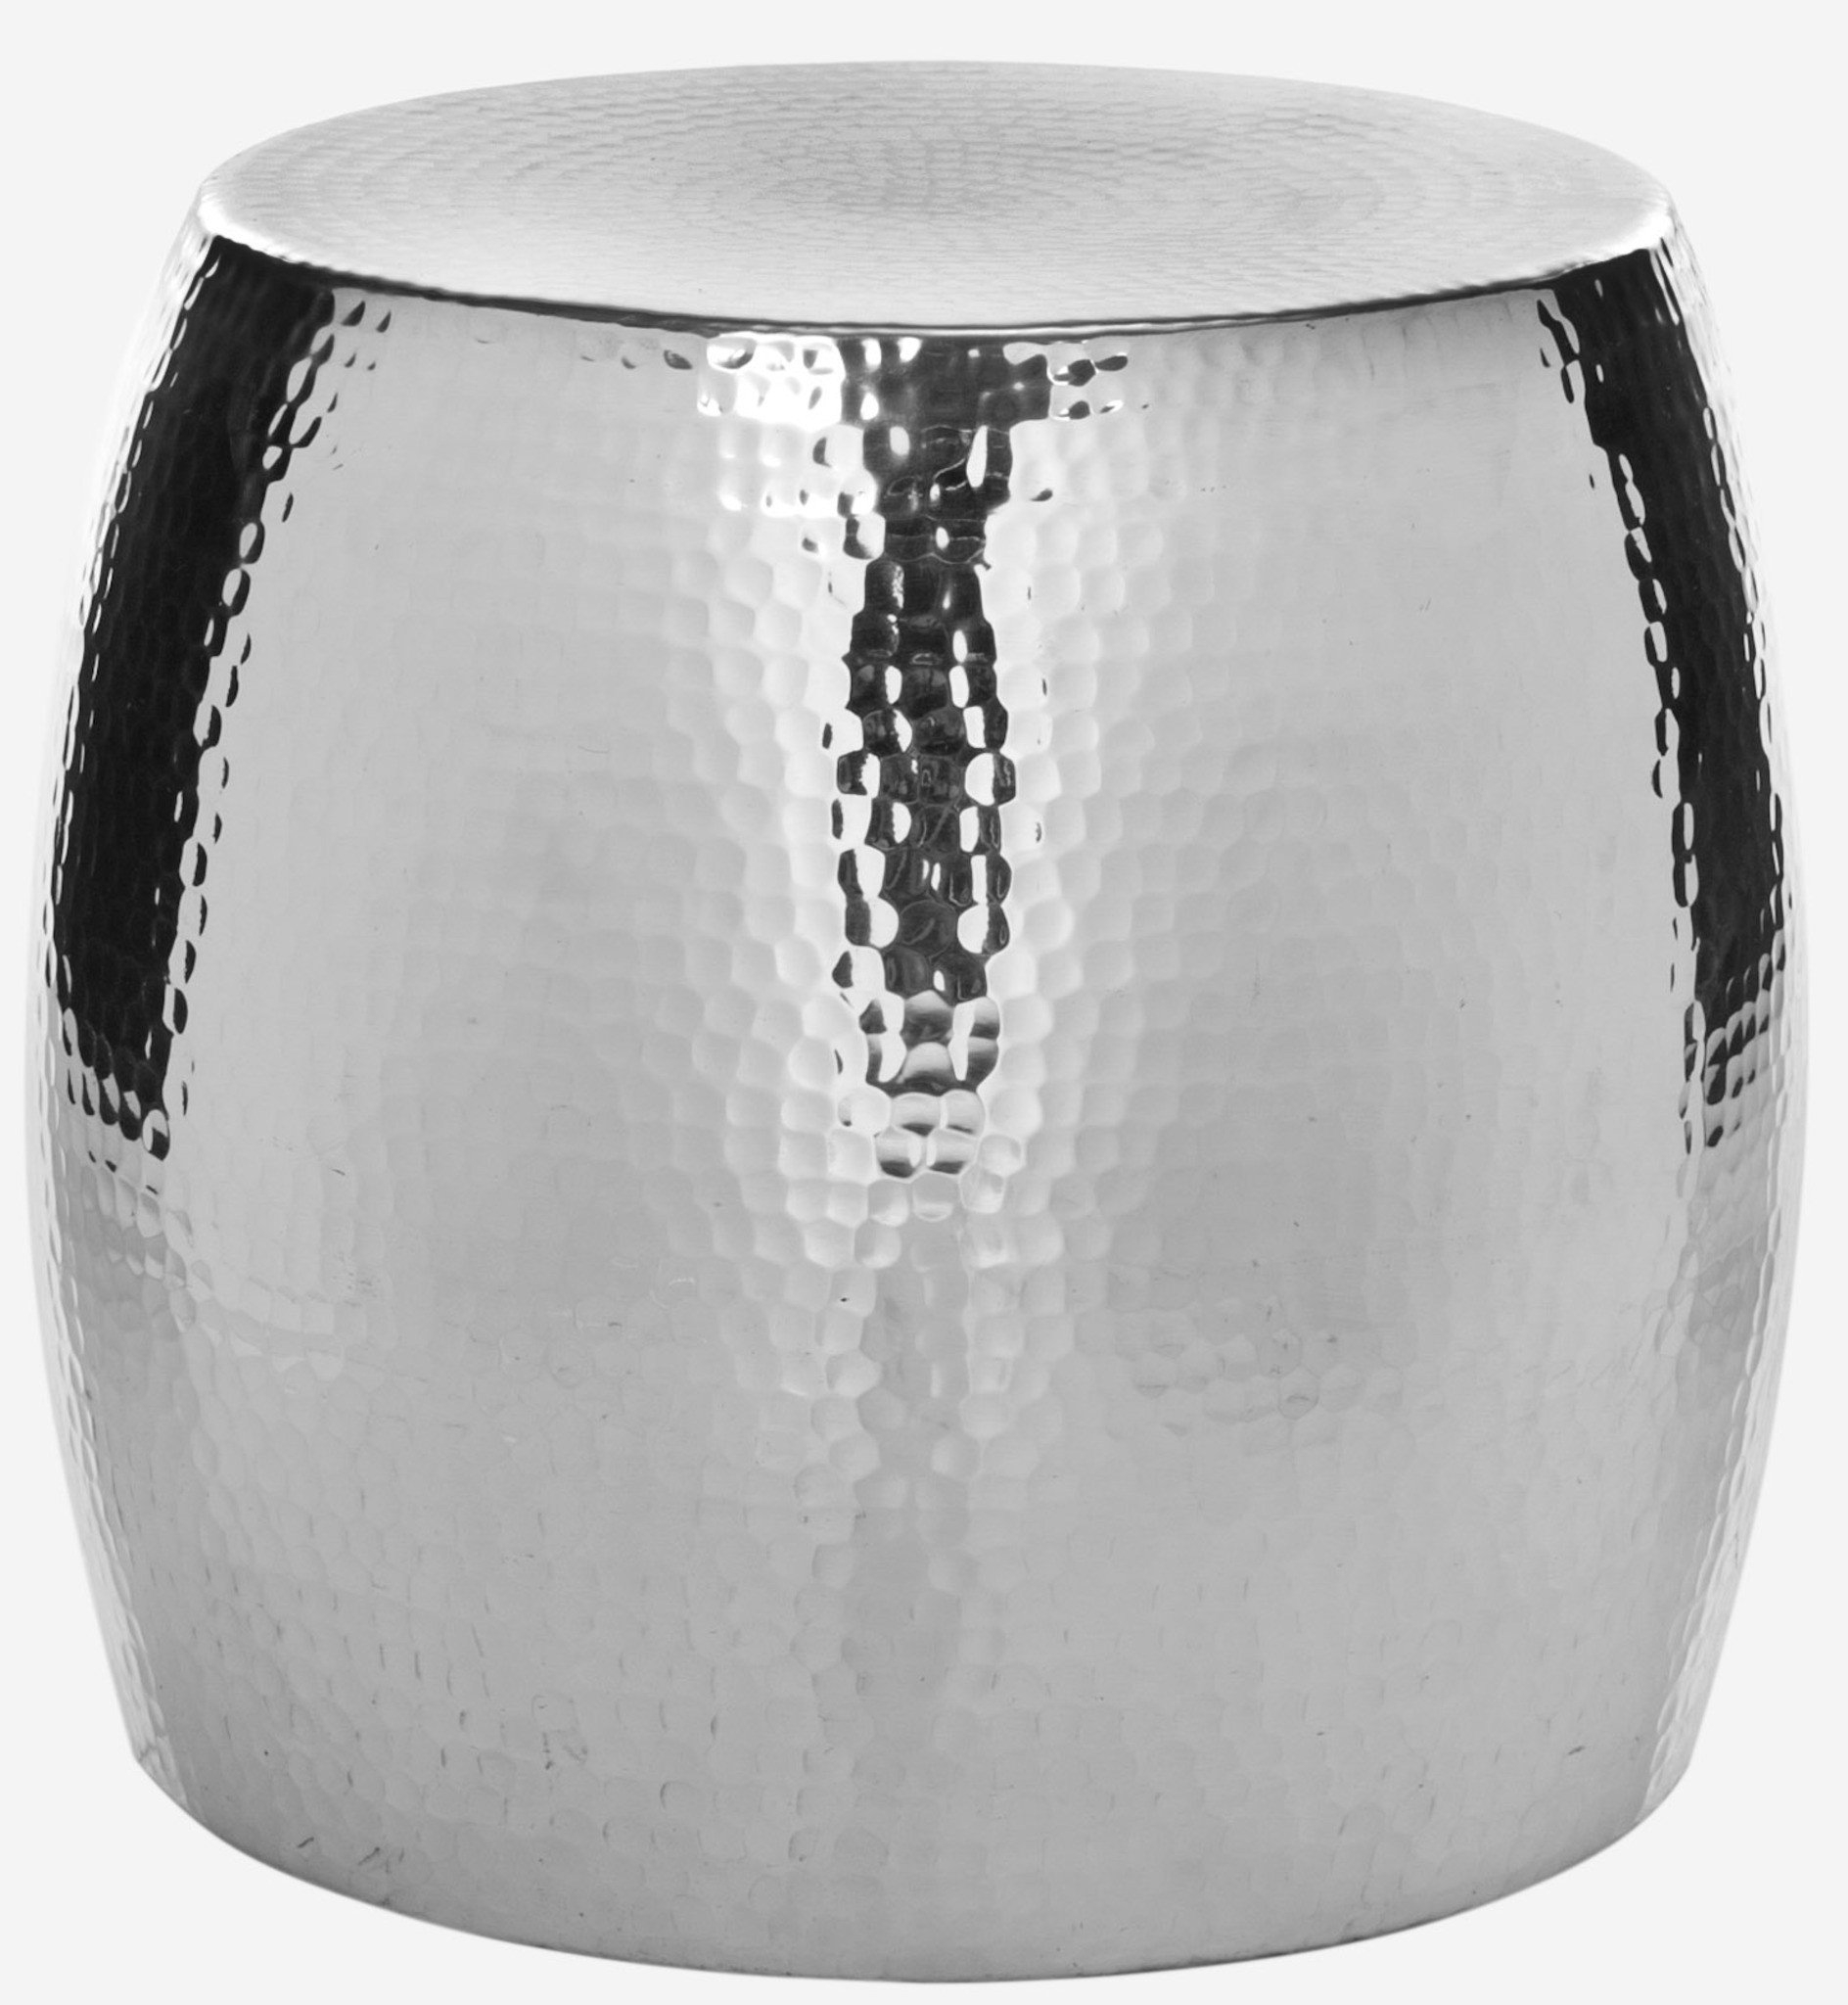 Safavieh Vanadium Aluminum Round Stool in Silver